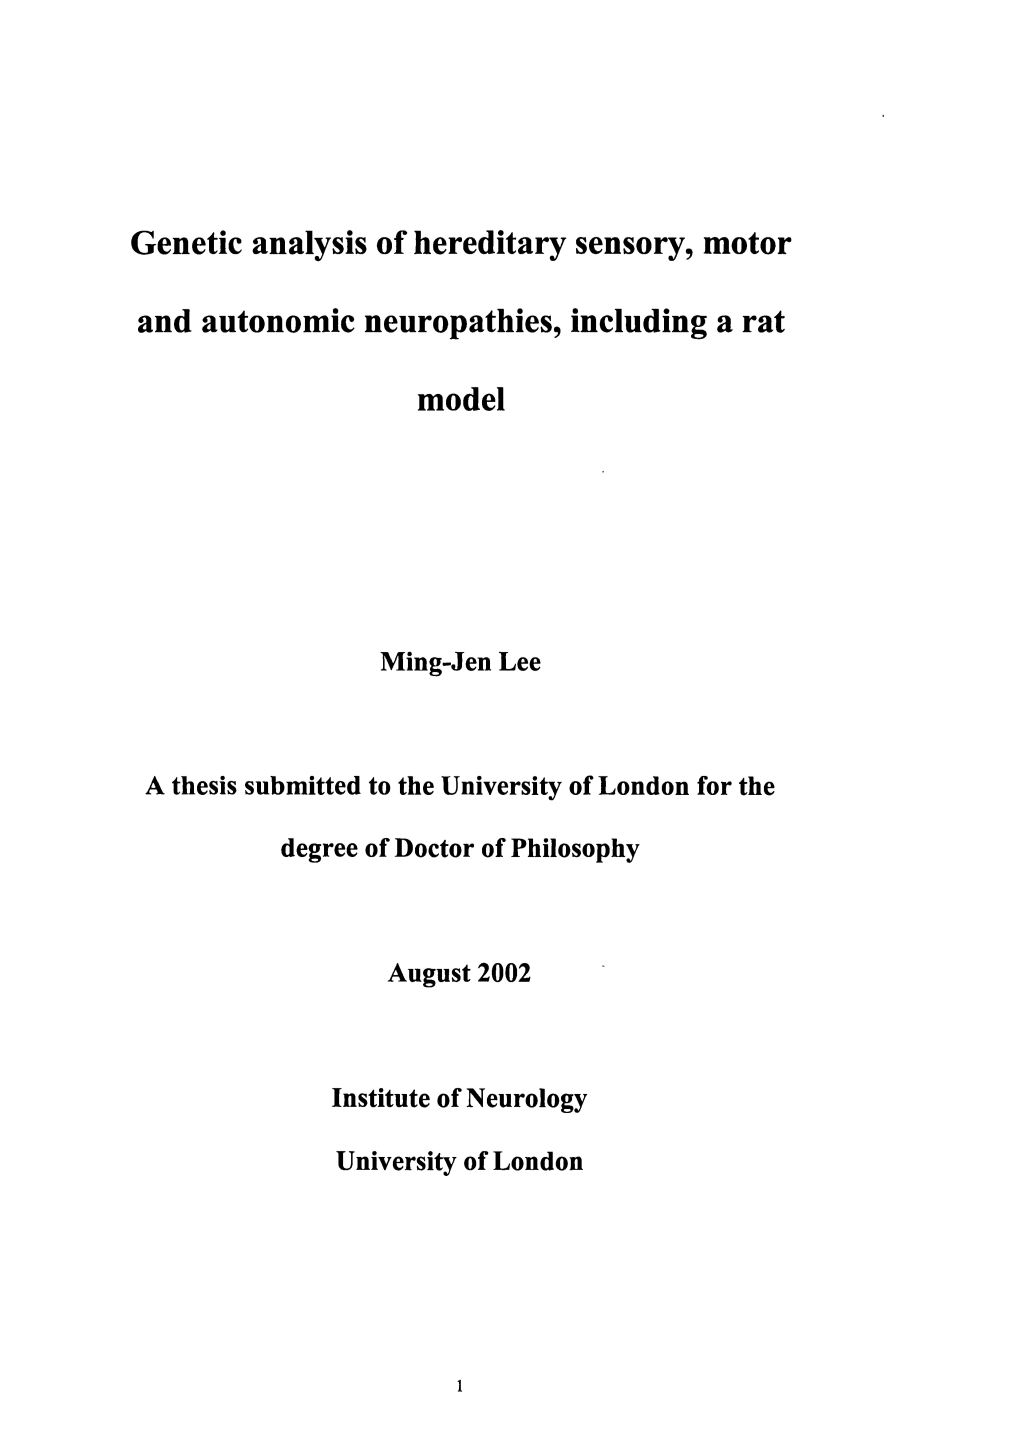 Genetic Analysis of Hereditary Sensory, Motor and Autonomic